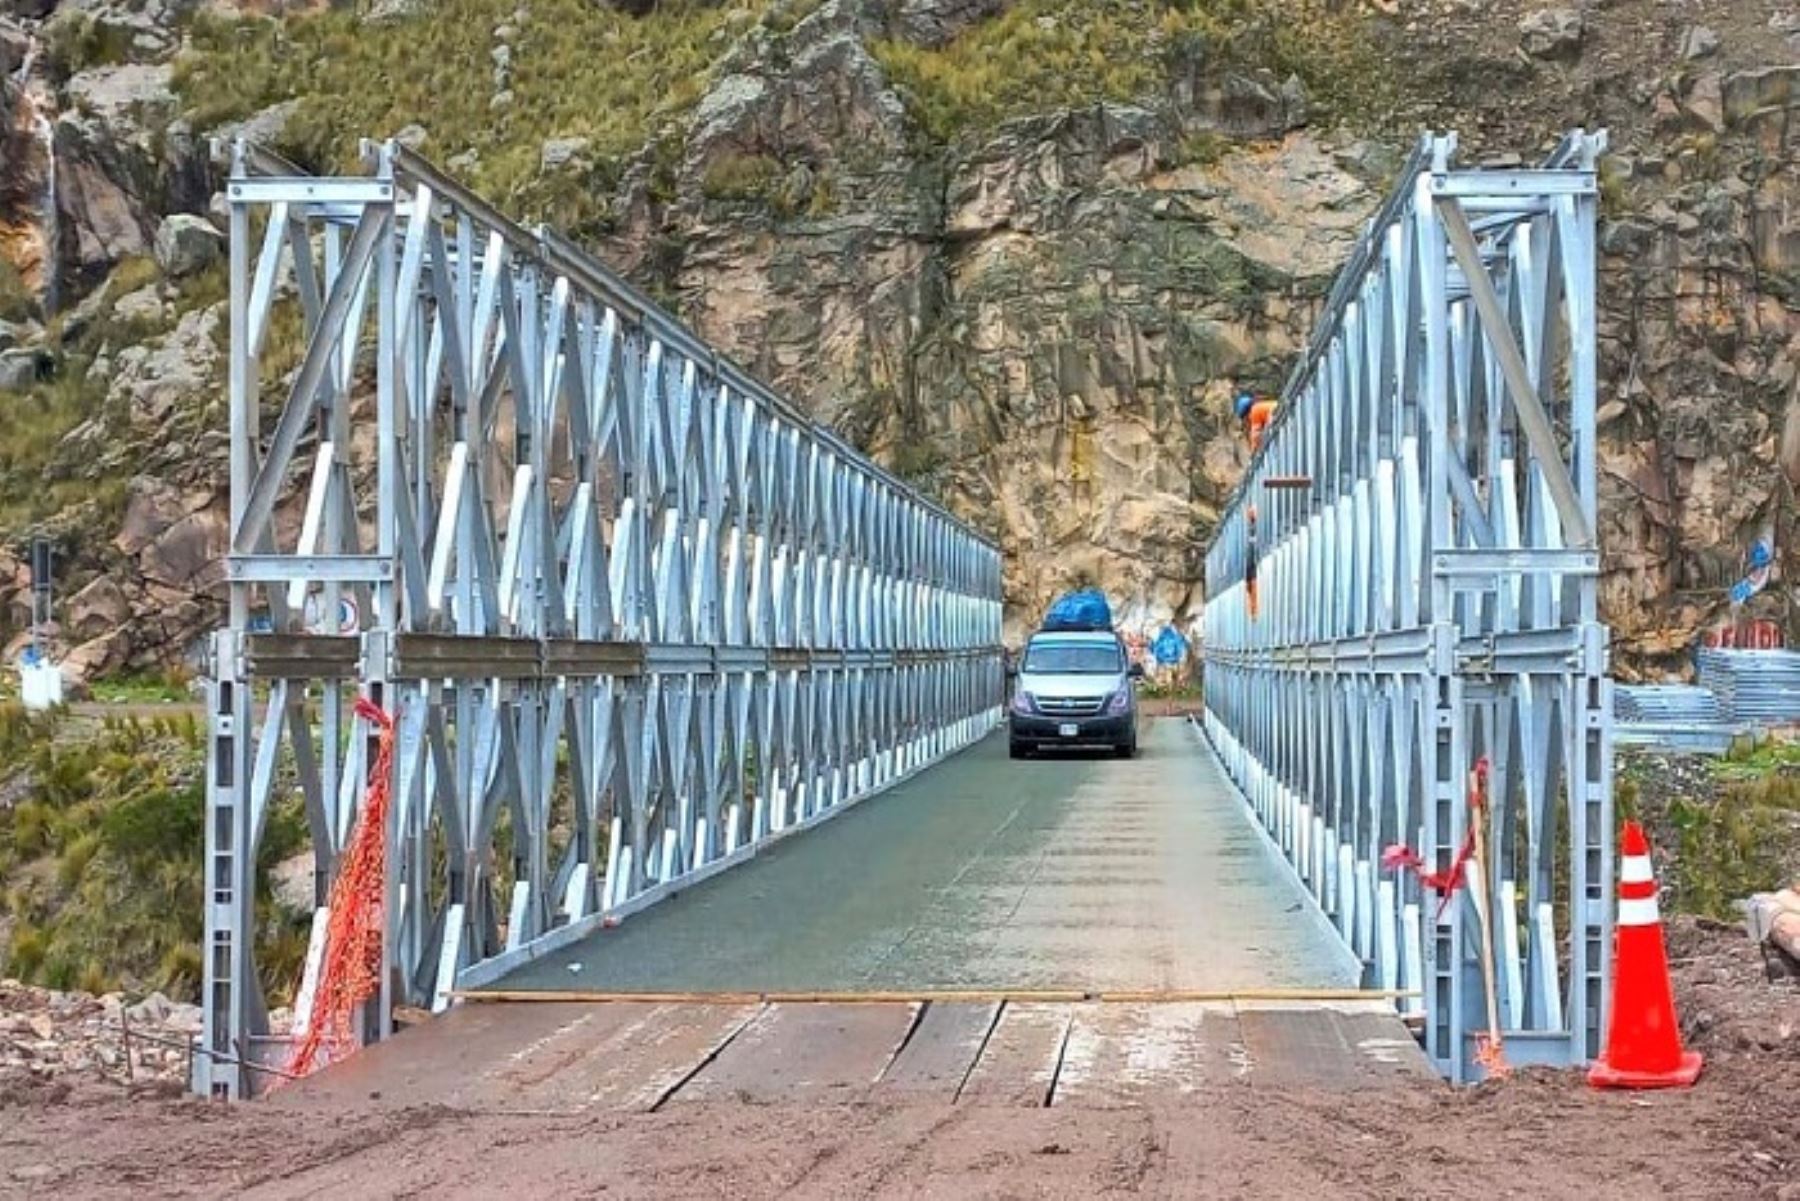 Los trabajos de instalación del puente modular se ejecutaron en 11 días, informó el Ministerio de Transportes y Comunicaciones.